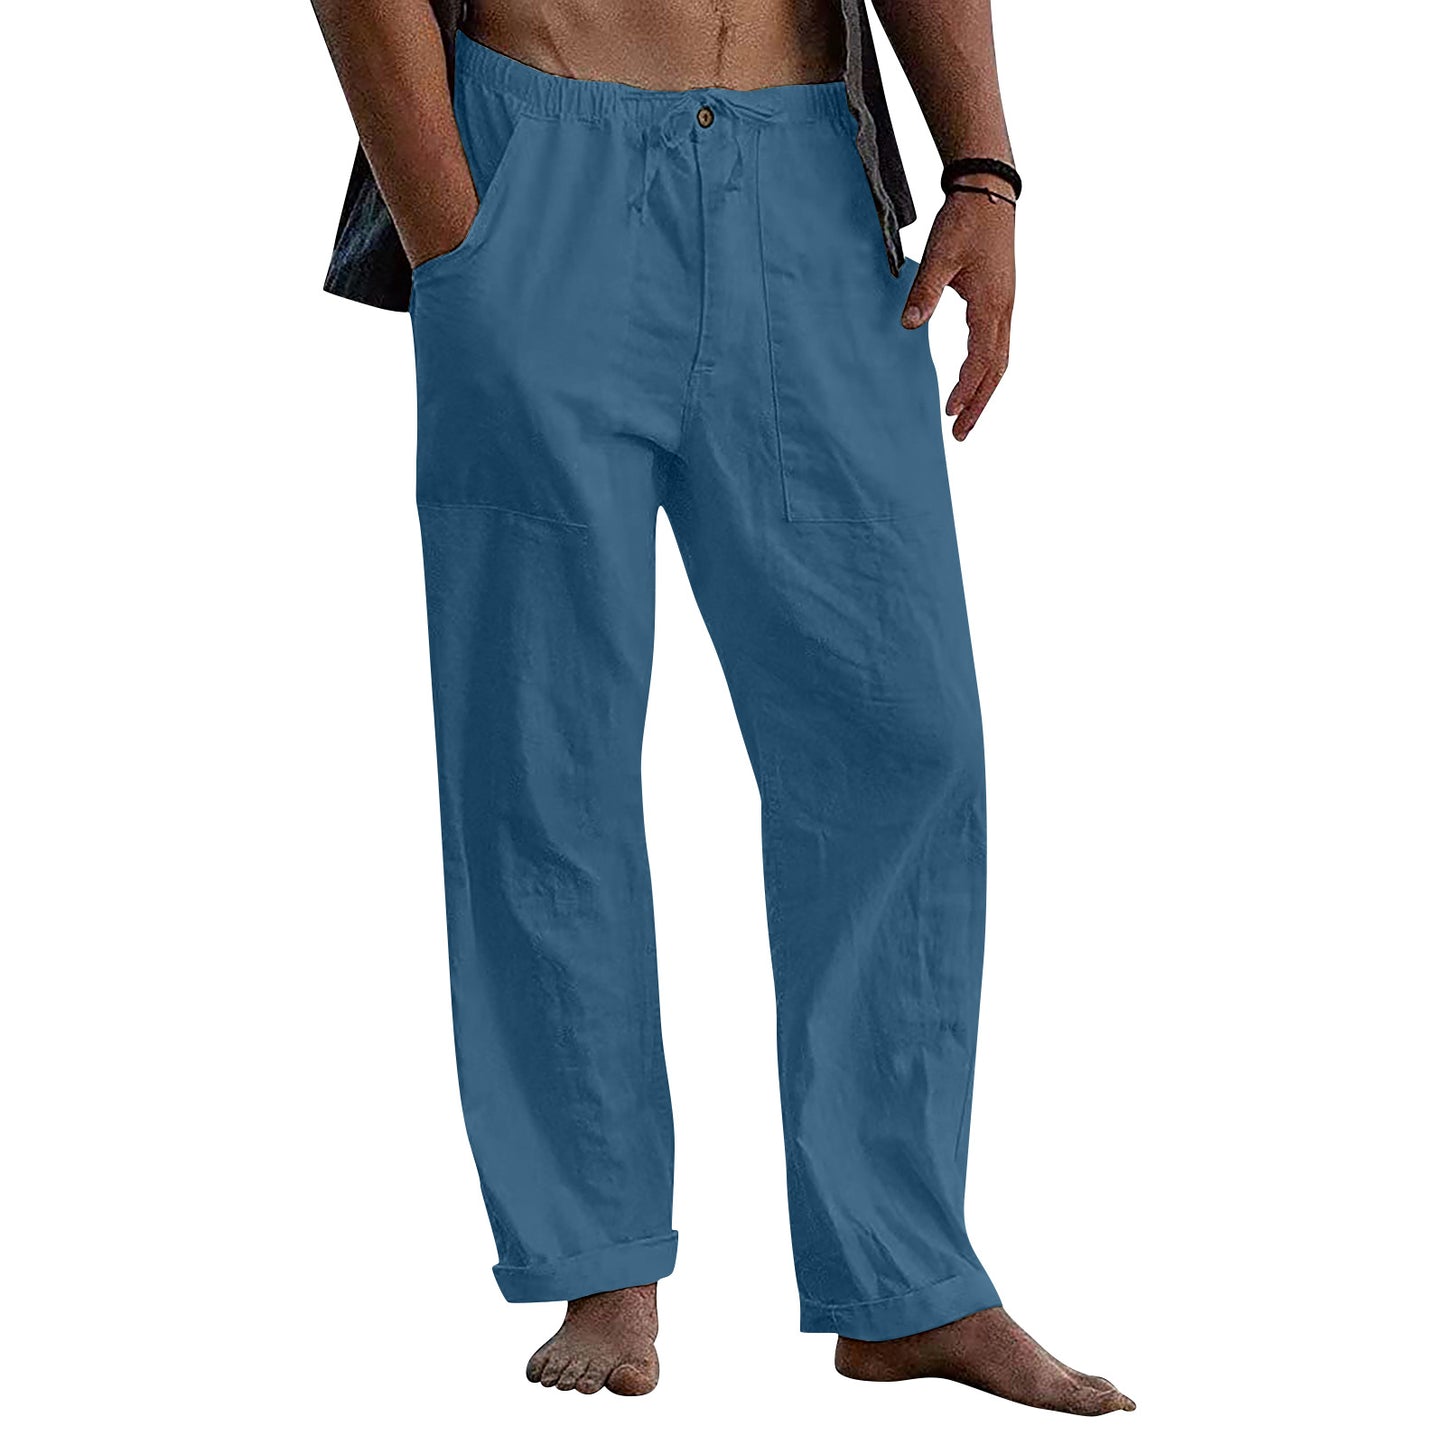 Casual Linen Men's Summer Beach Pants with Elastic Waist